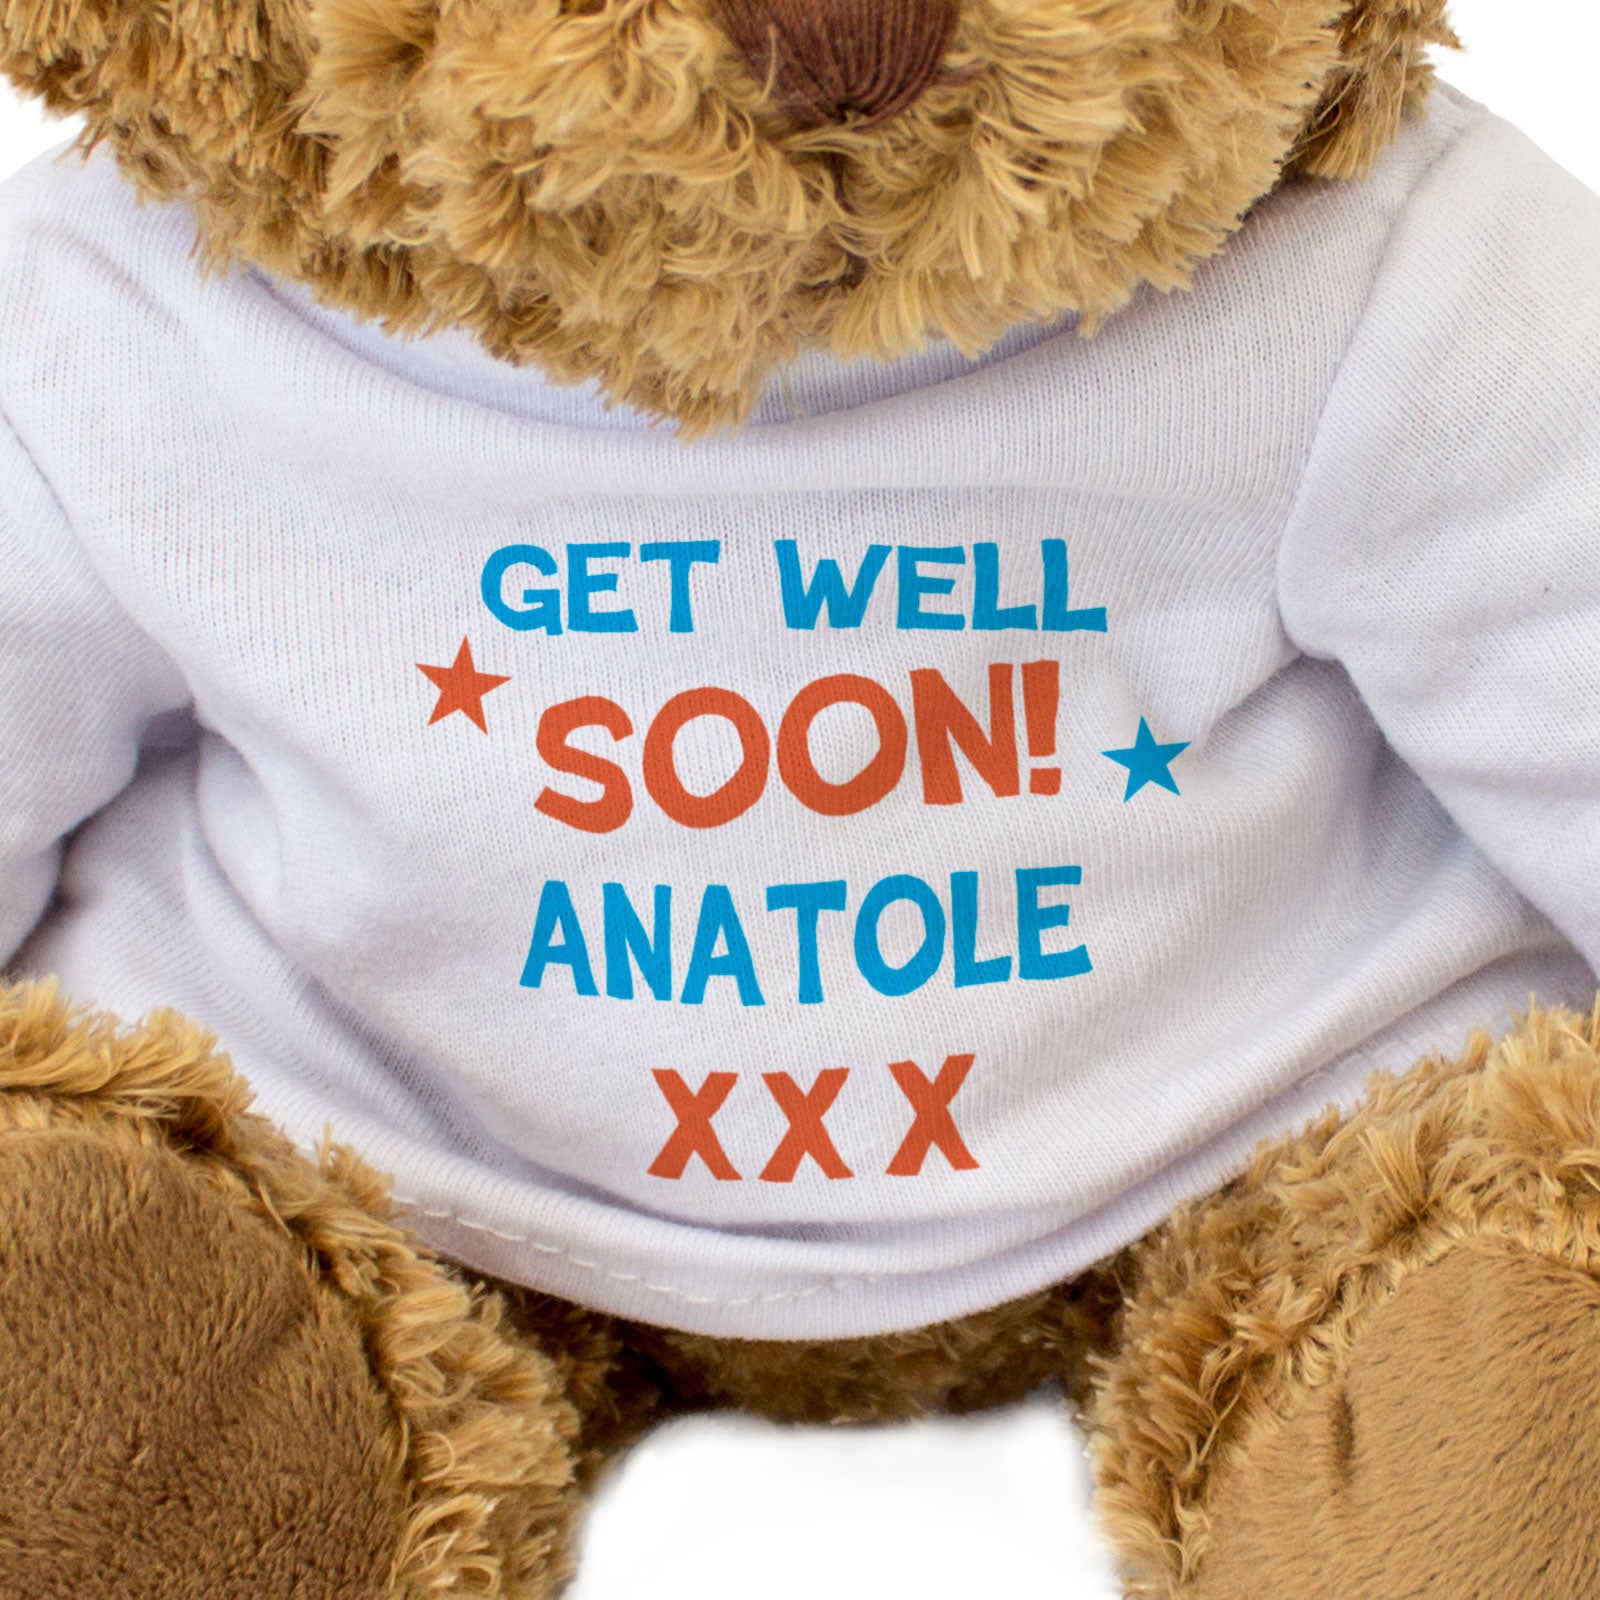 Get Well Soon Anatole - Teddy Bear